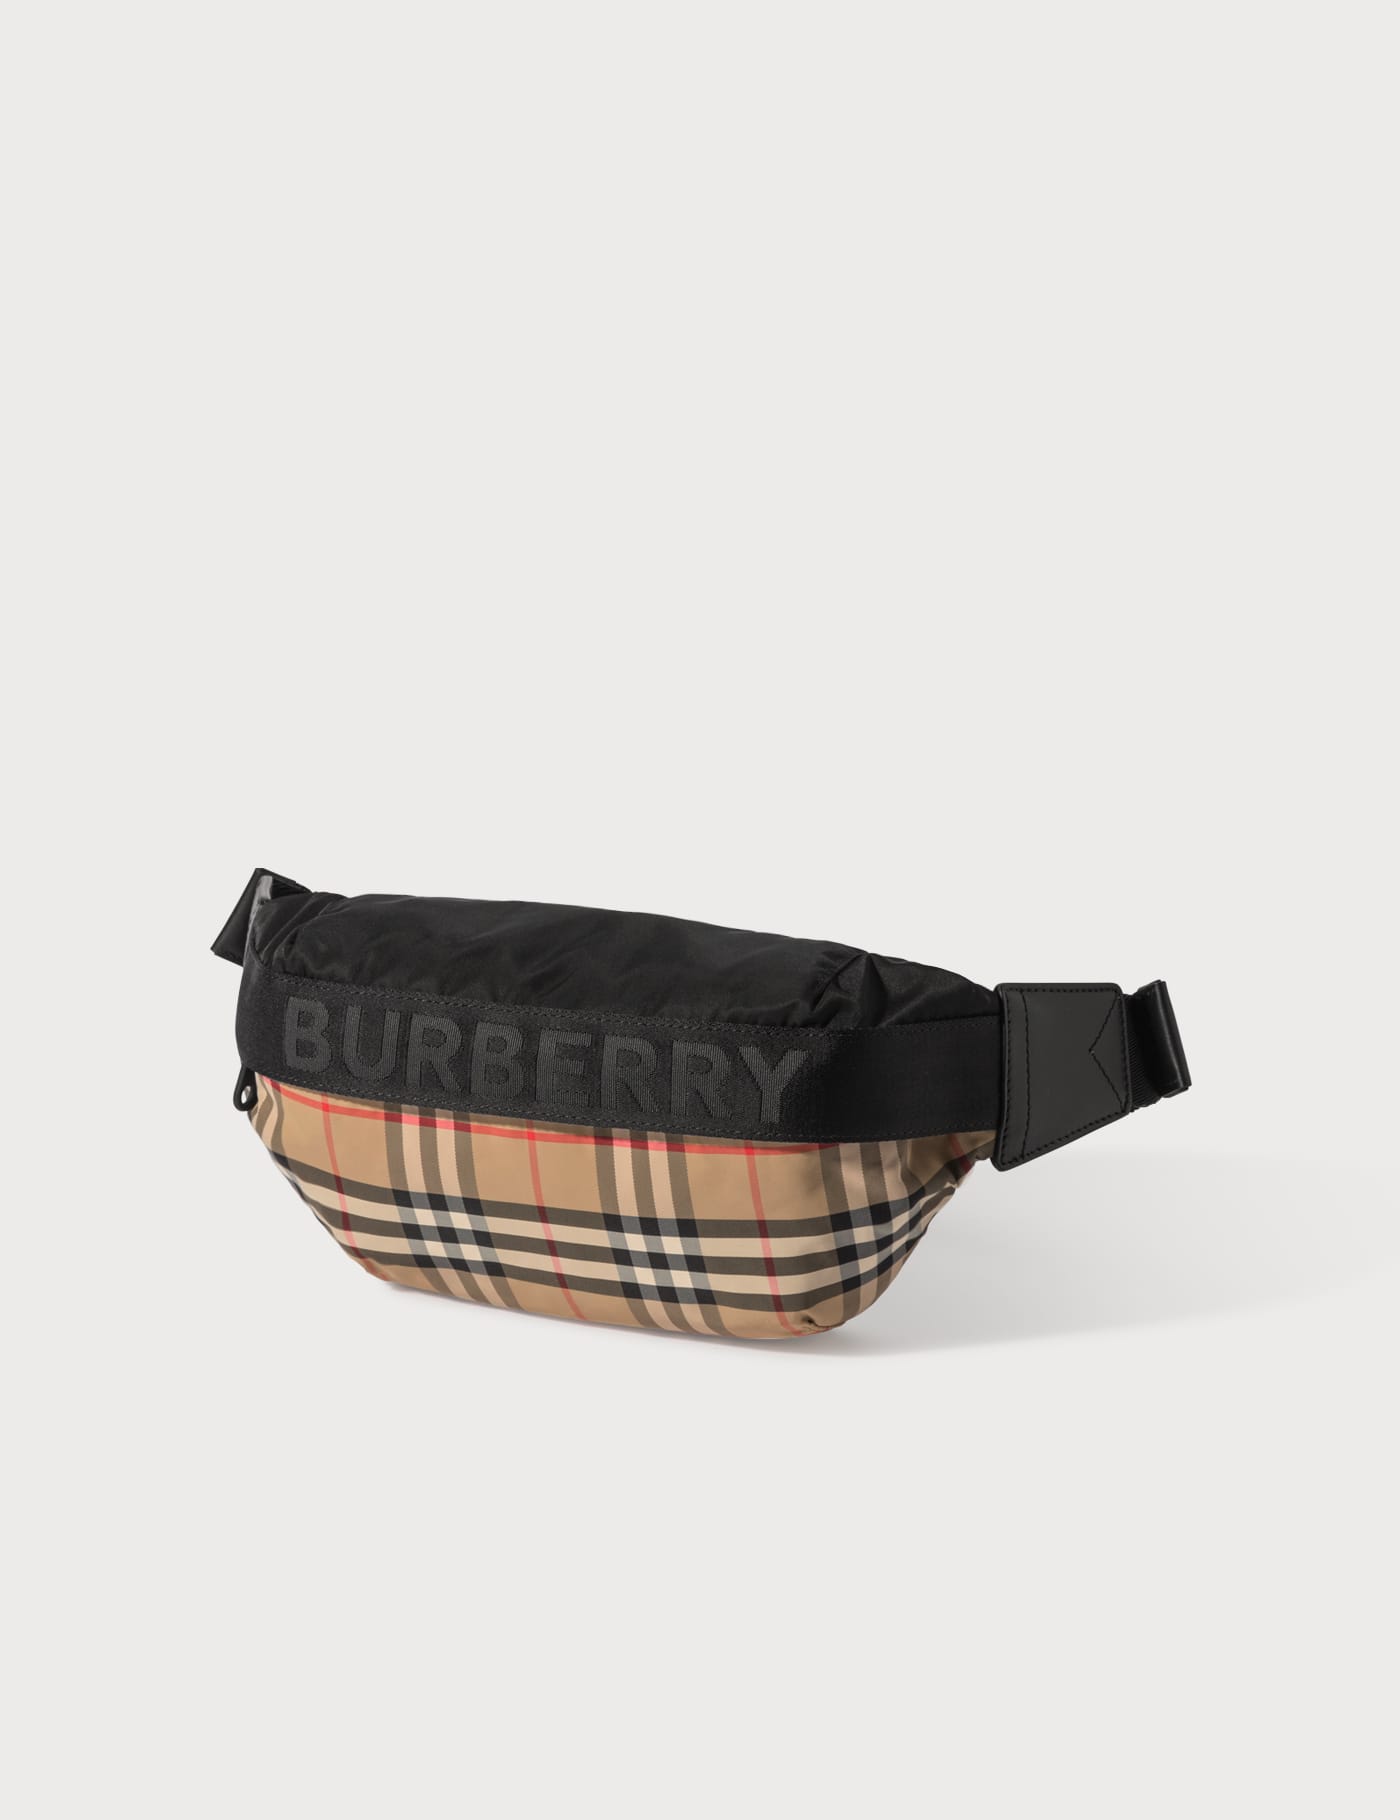 Burberry - Vintage Check Bum Bag | HBX